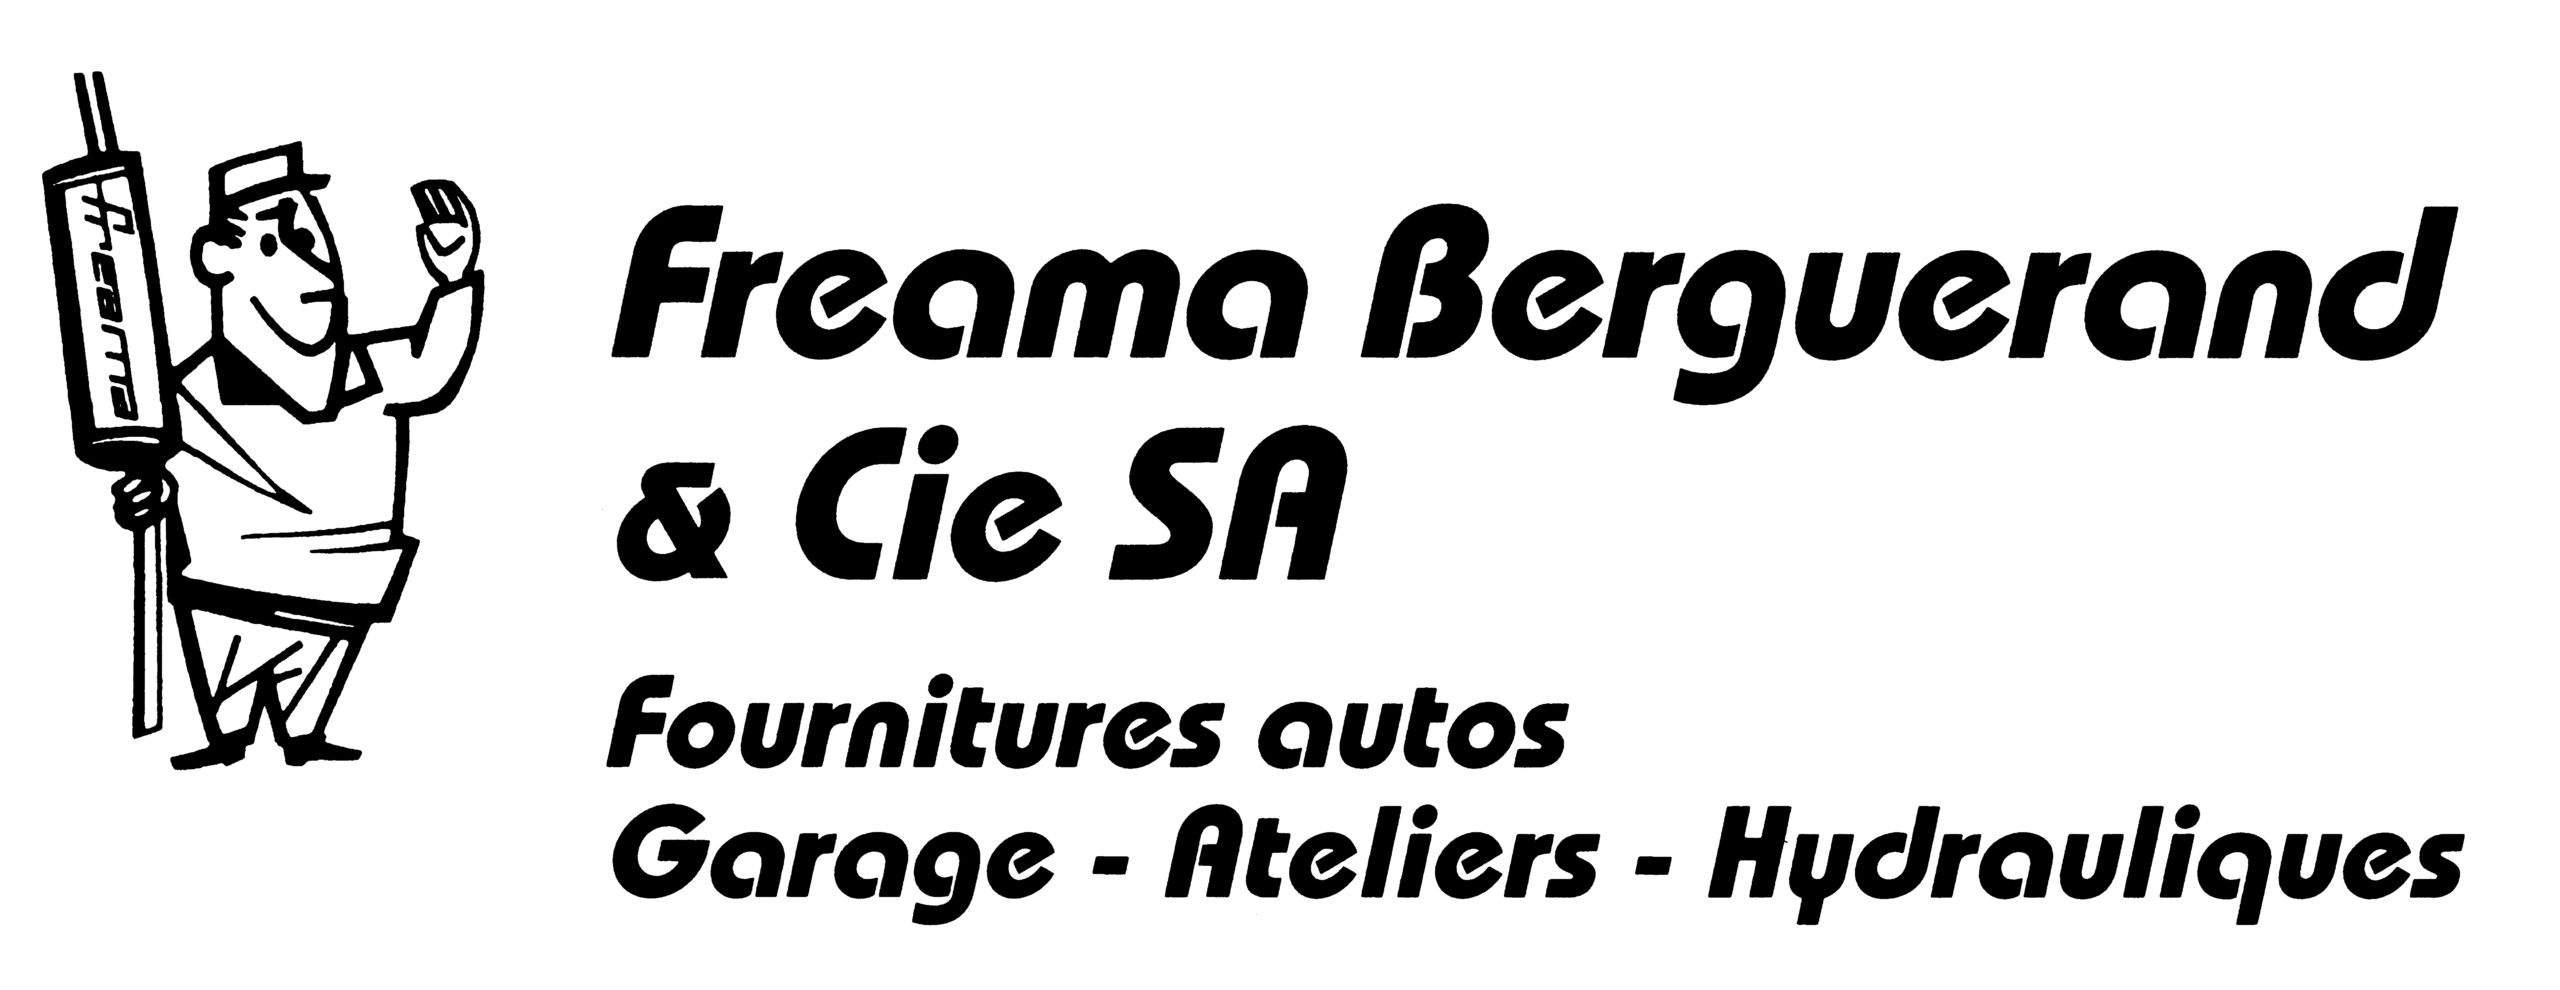 Freama-Berguerand & Cie SA